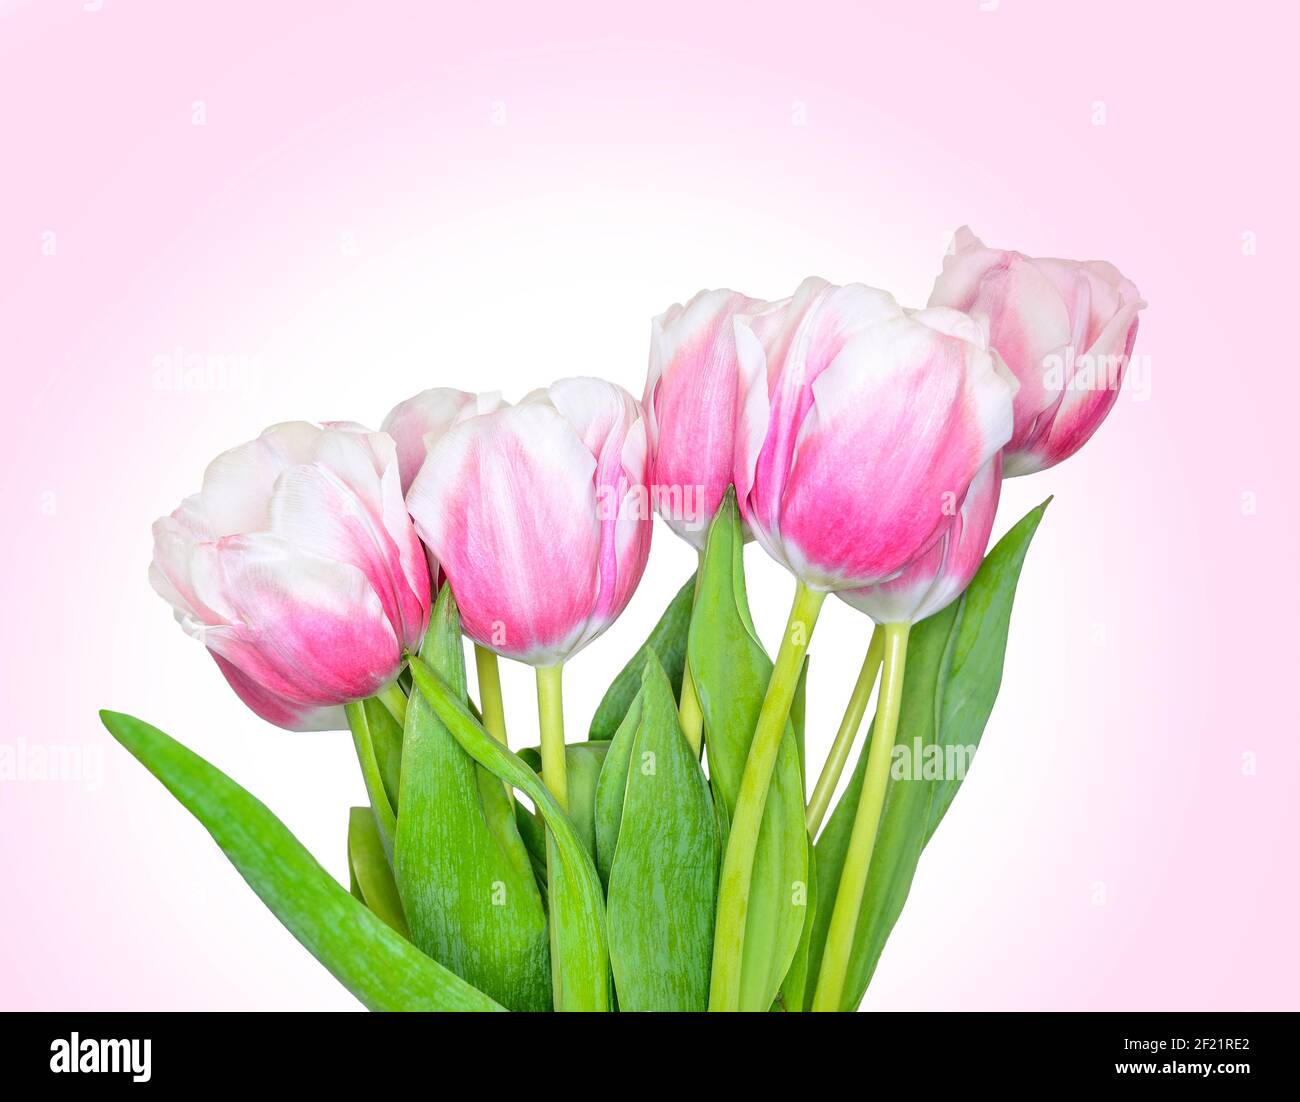 Bouquet de roses avec fleurs de tulipe blanc de printemps gros plan sur fond de dégradé rose. Composition florale festive pour la fête des femmes, fête des mères o Banque D'Images